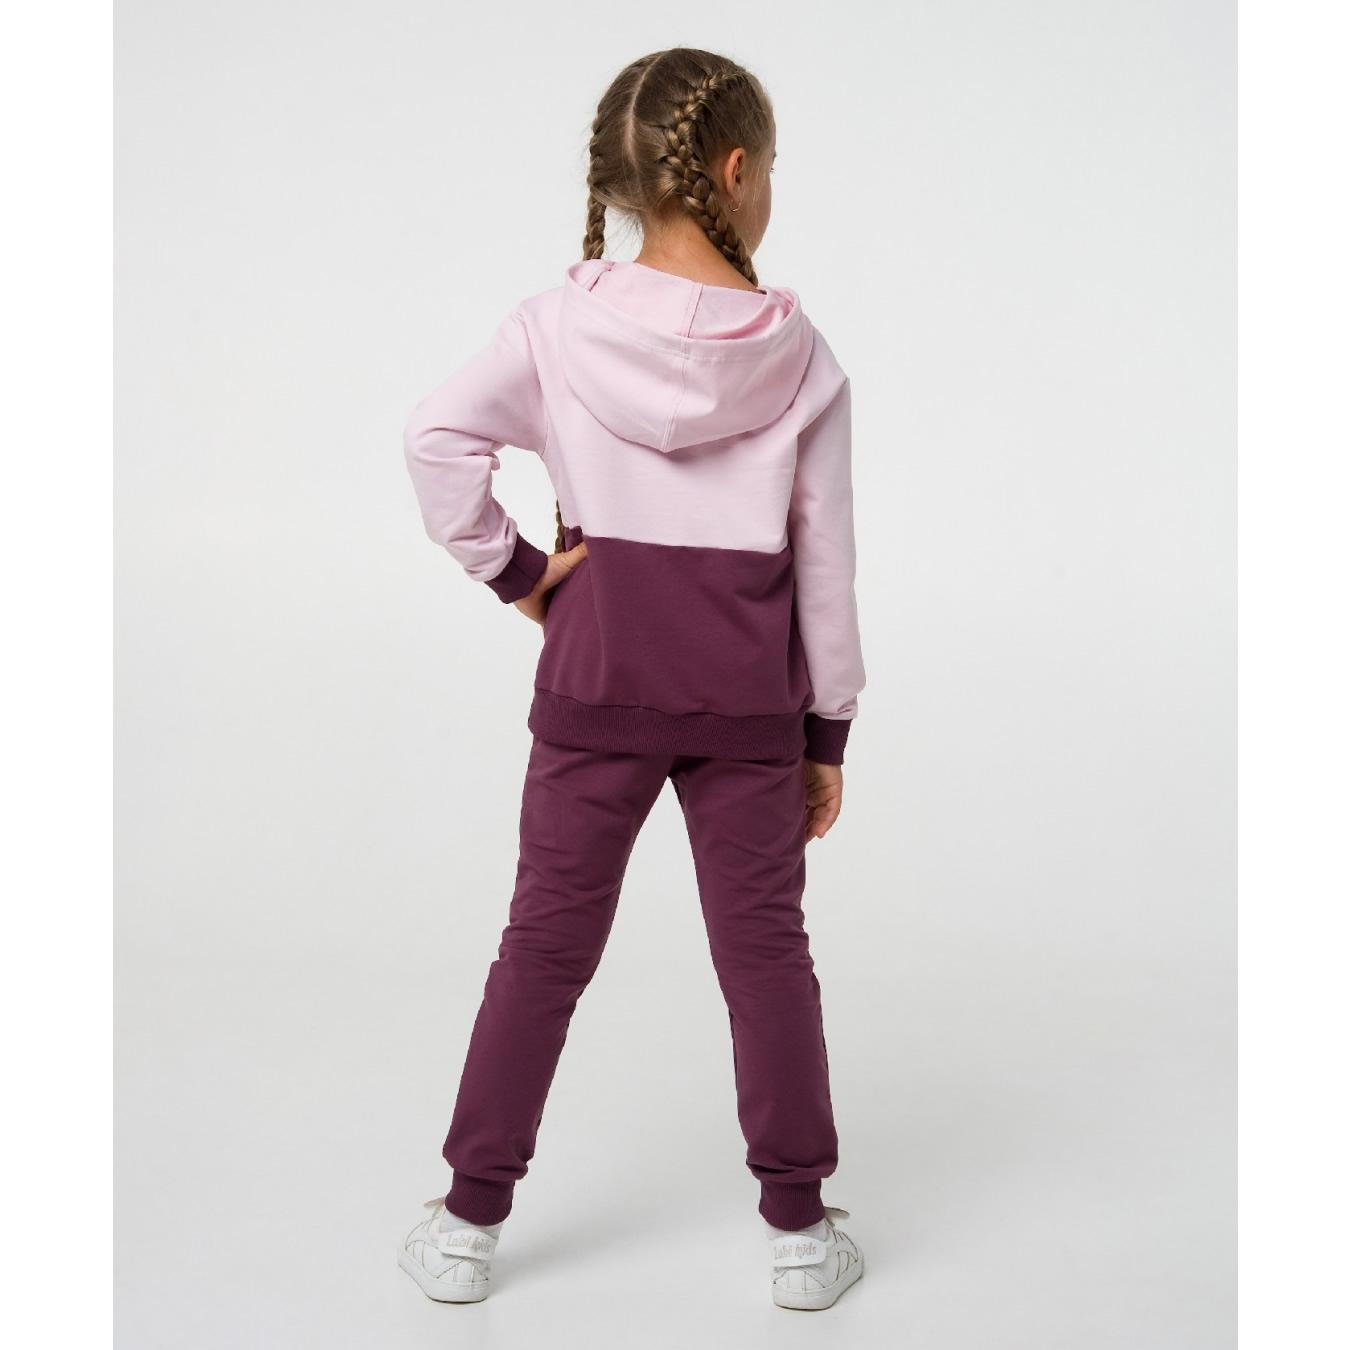 Спортивний костюм для дівчинки, рожевий-ліловий (117278, 117279), Smil (Смил)